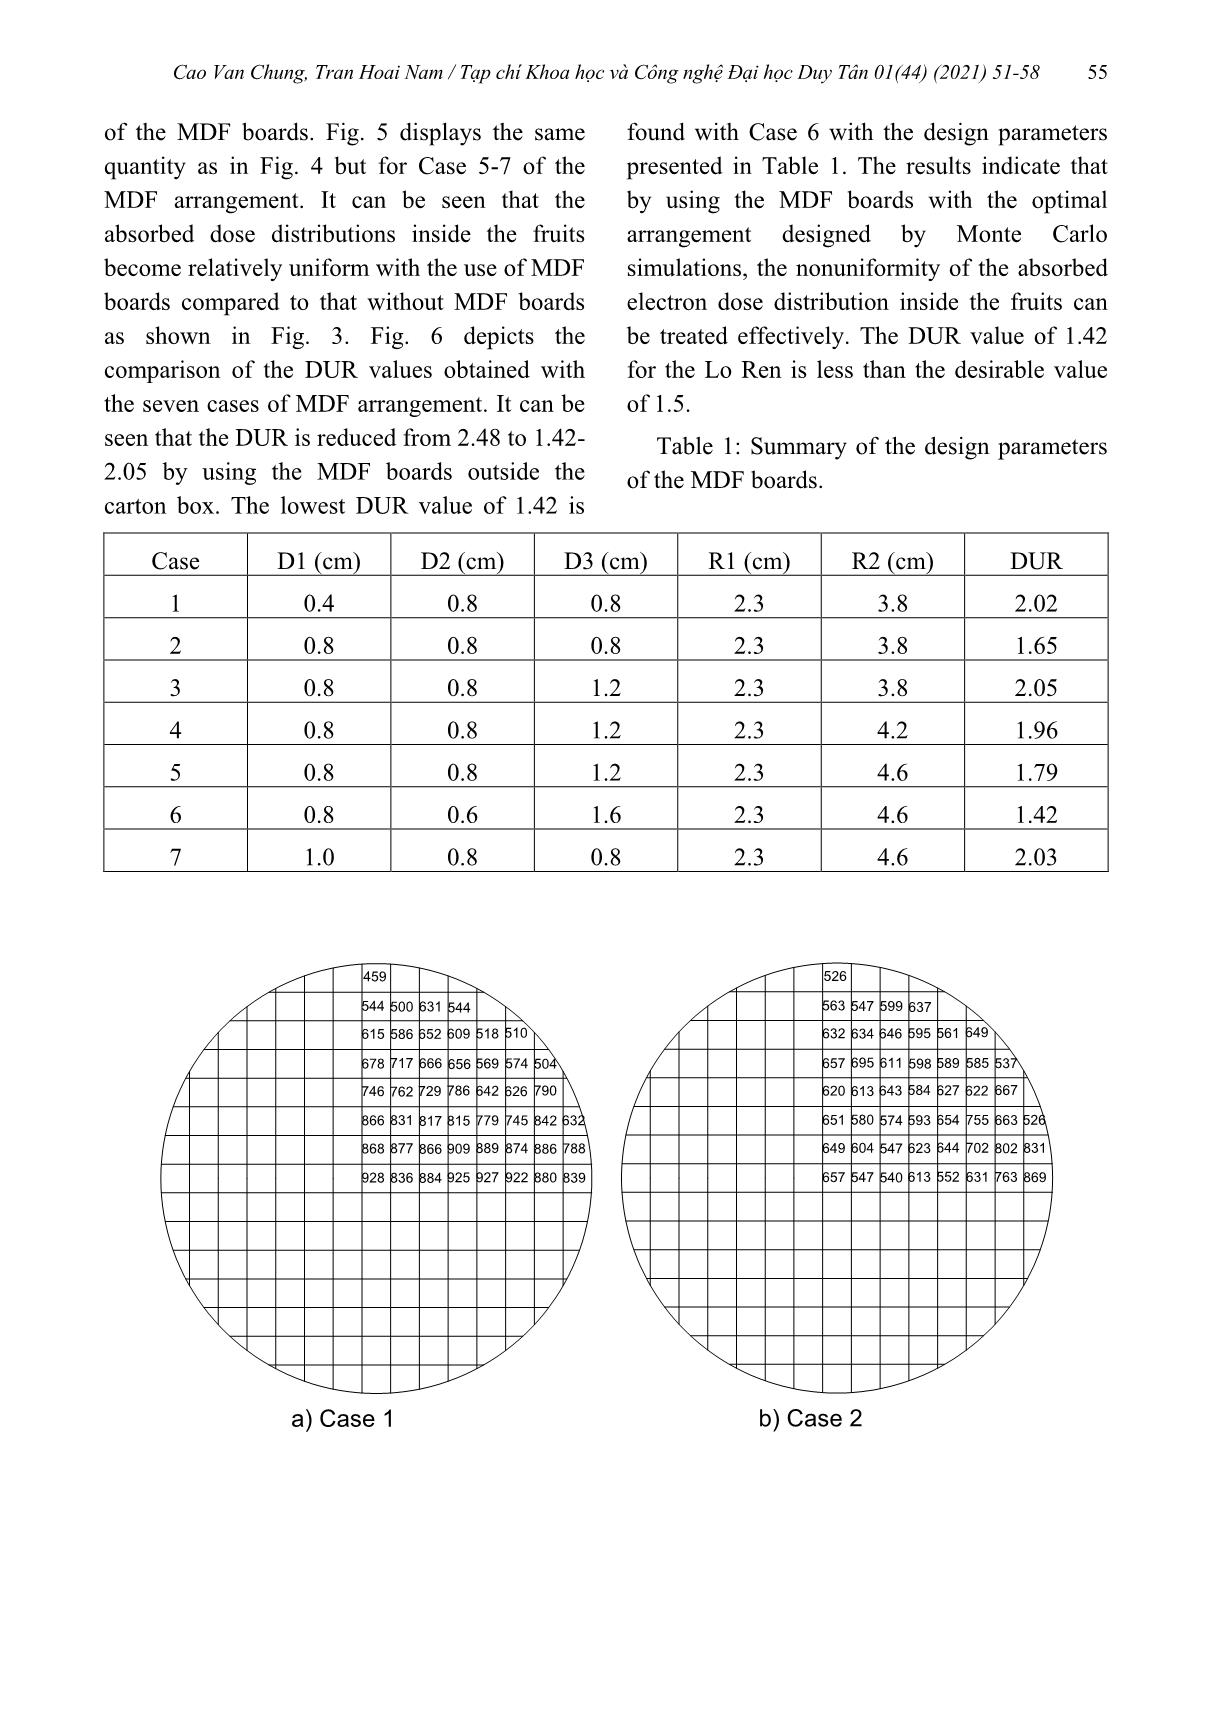 Khảo sát phân bố liều hấp thụ trong trái vú sữa chiếu xạ bởi chùm điện tử 10 MeV sử dụng mô phỏng Monte Carlo trang 5